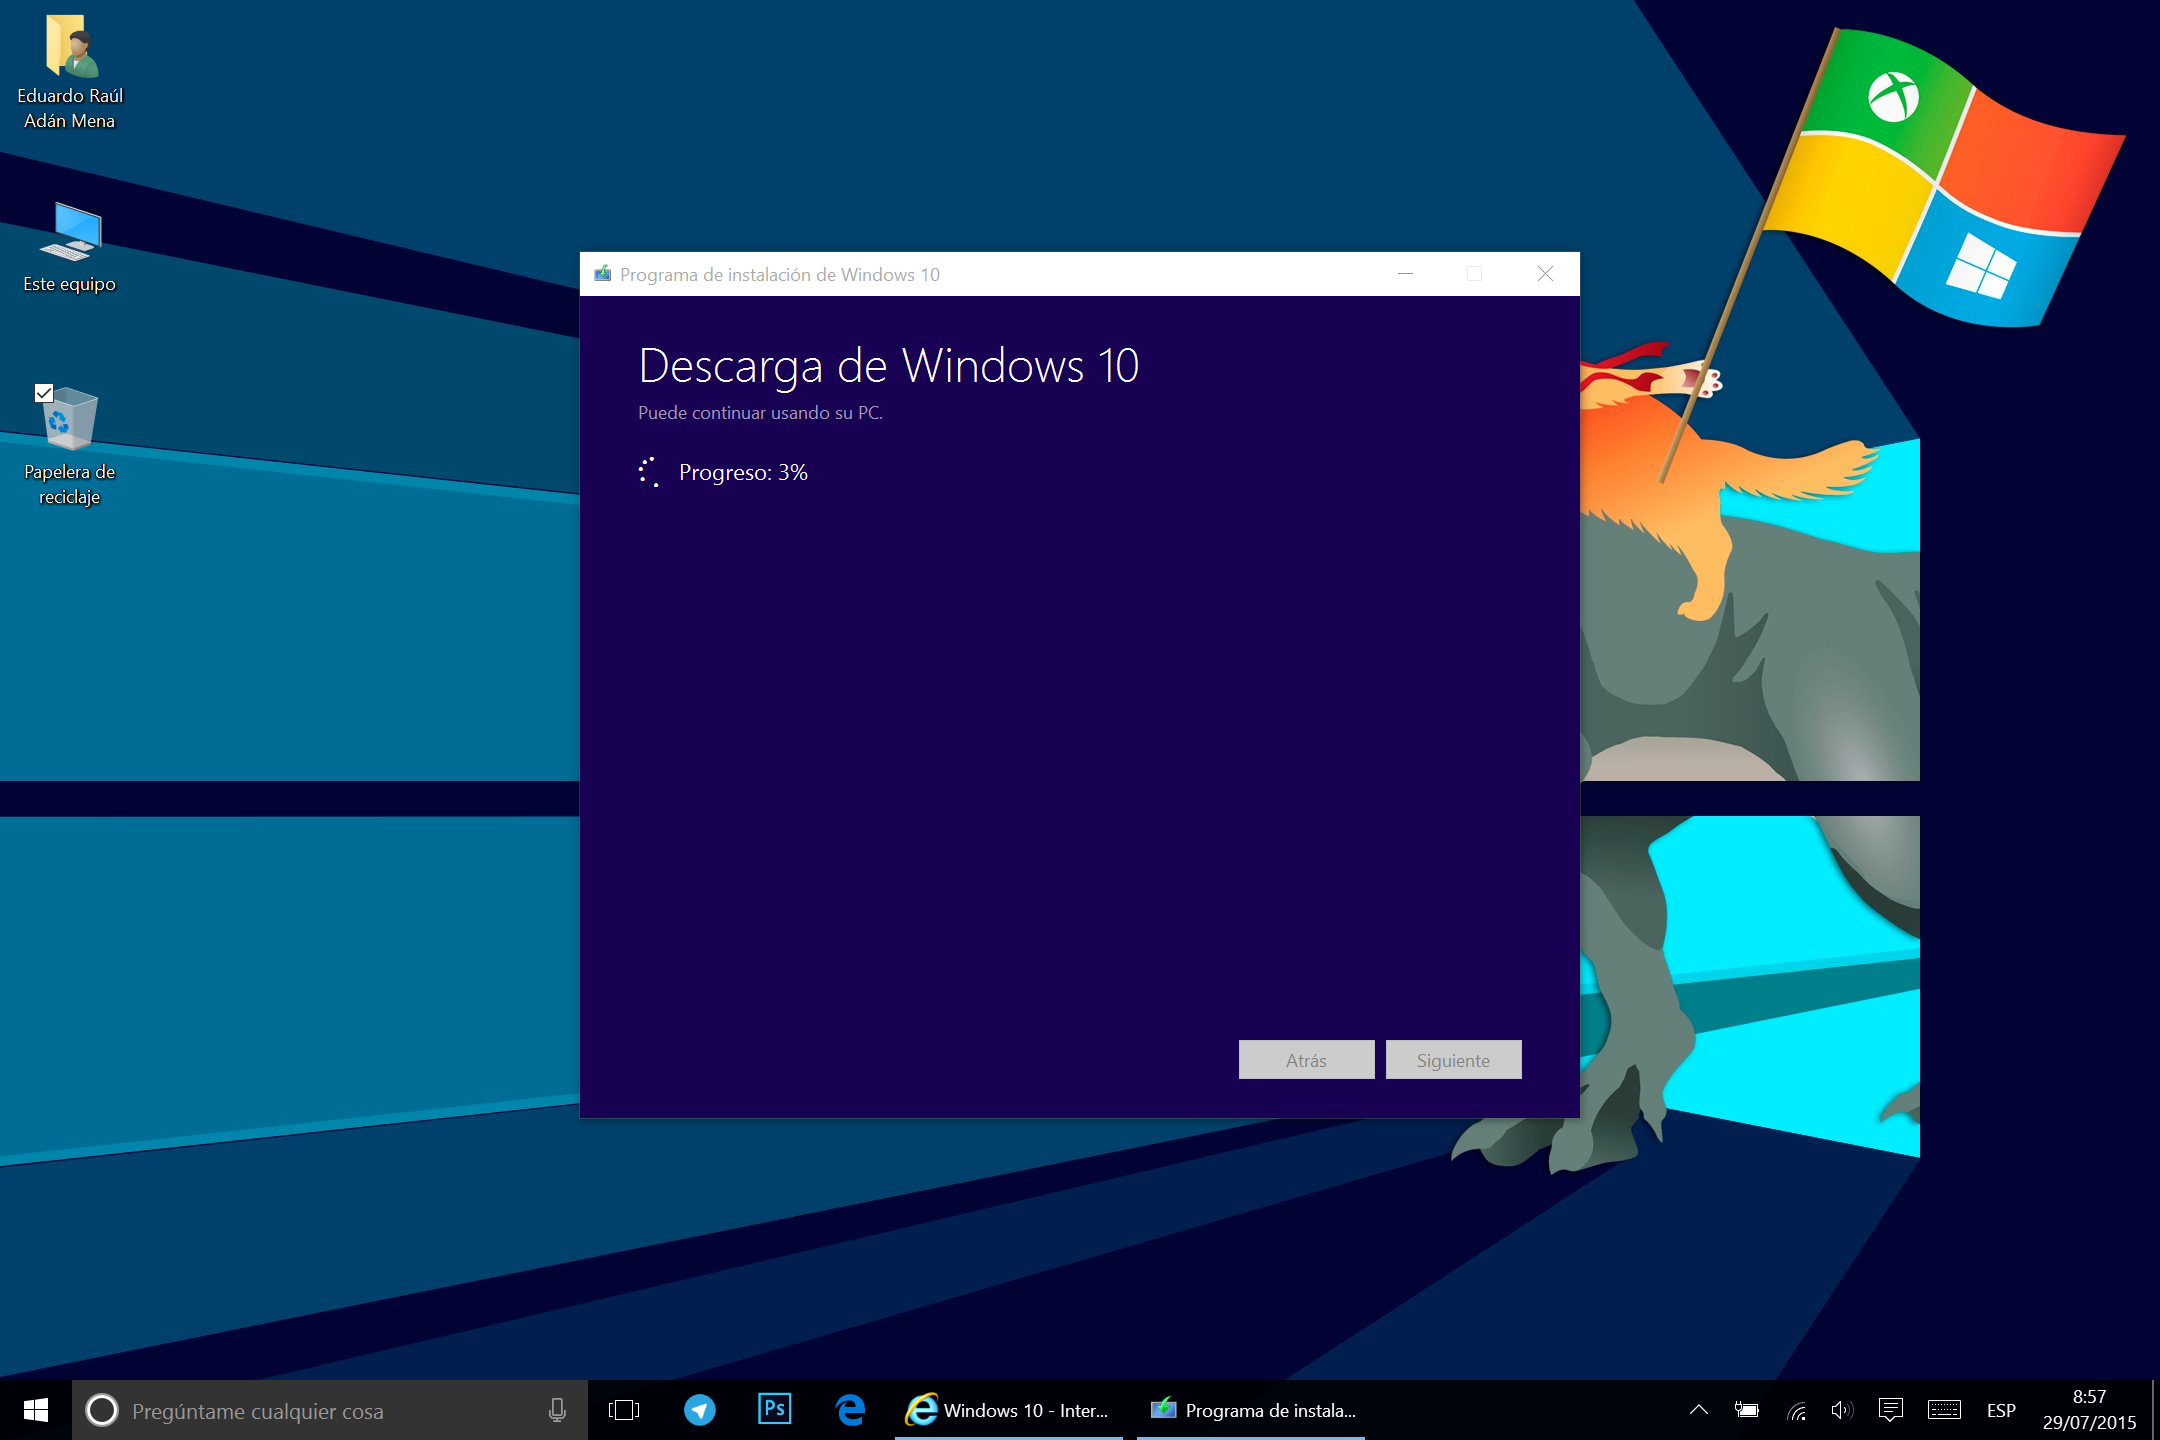 Descarga de Windows 10